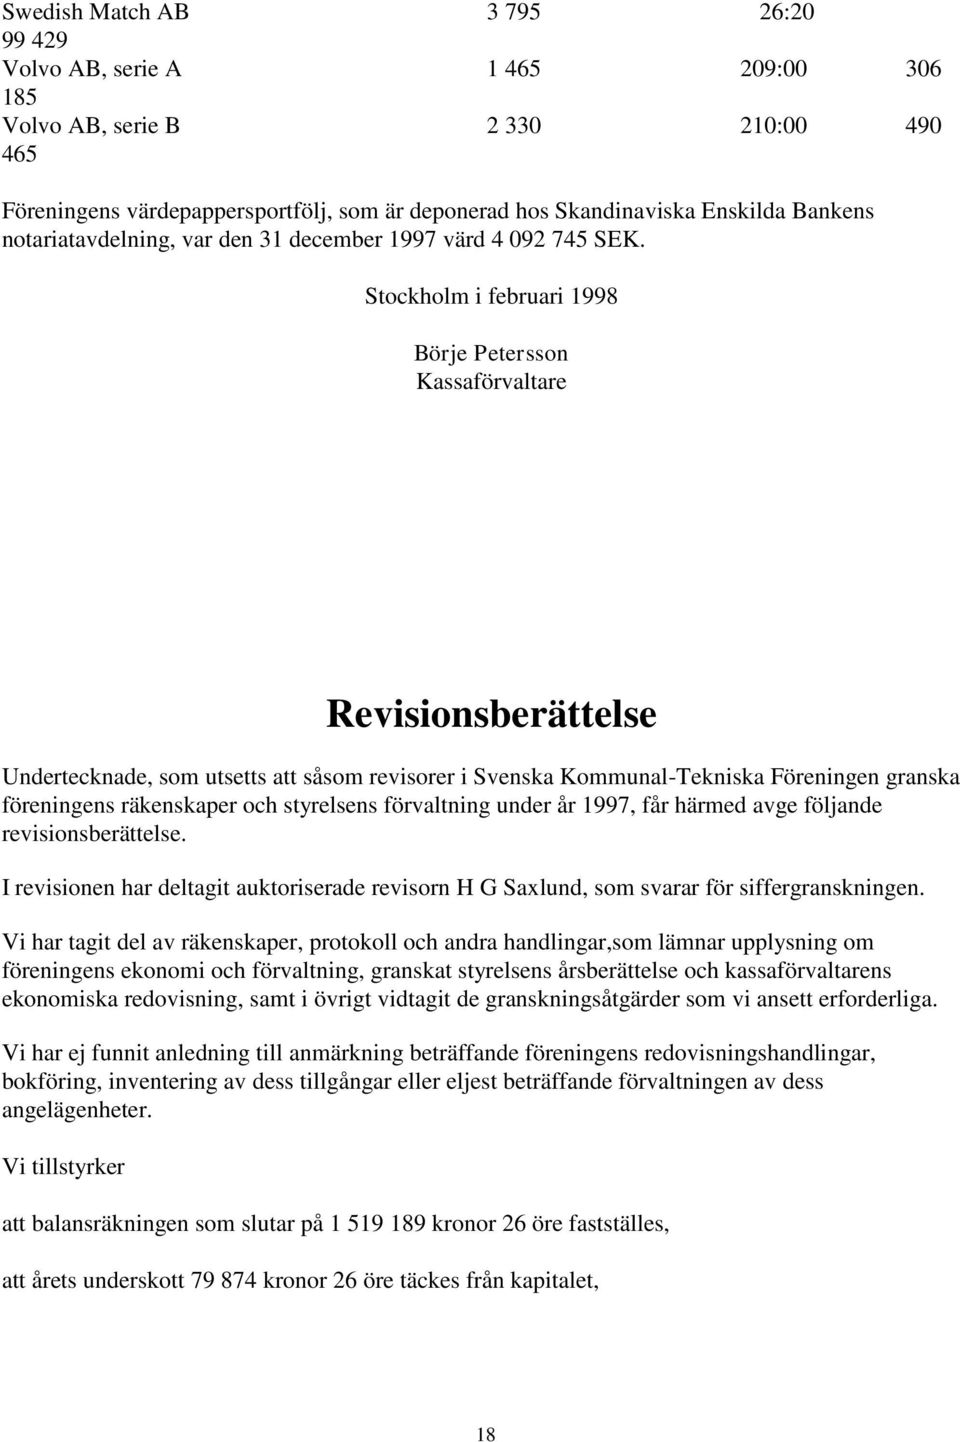 Stockholm i februari 1998 Börje Petersson Kassaförvaltare Revisionsberättelse Undertecknade, som utsetts att såsom revisorer i Svenska Kommunal-Tekniska Föreningen granska föreningens räkenskaper och